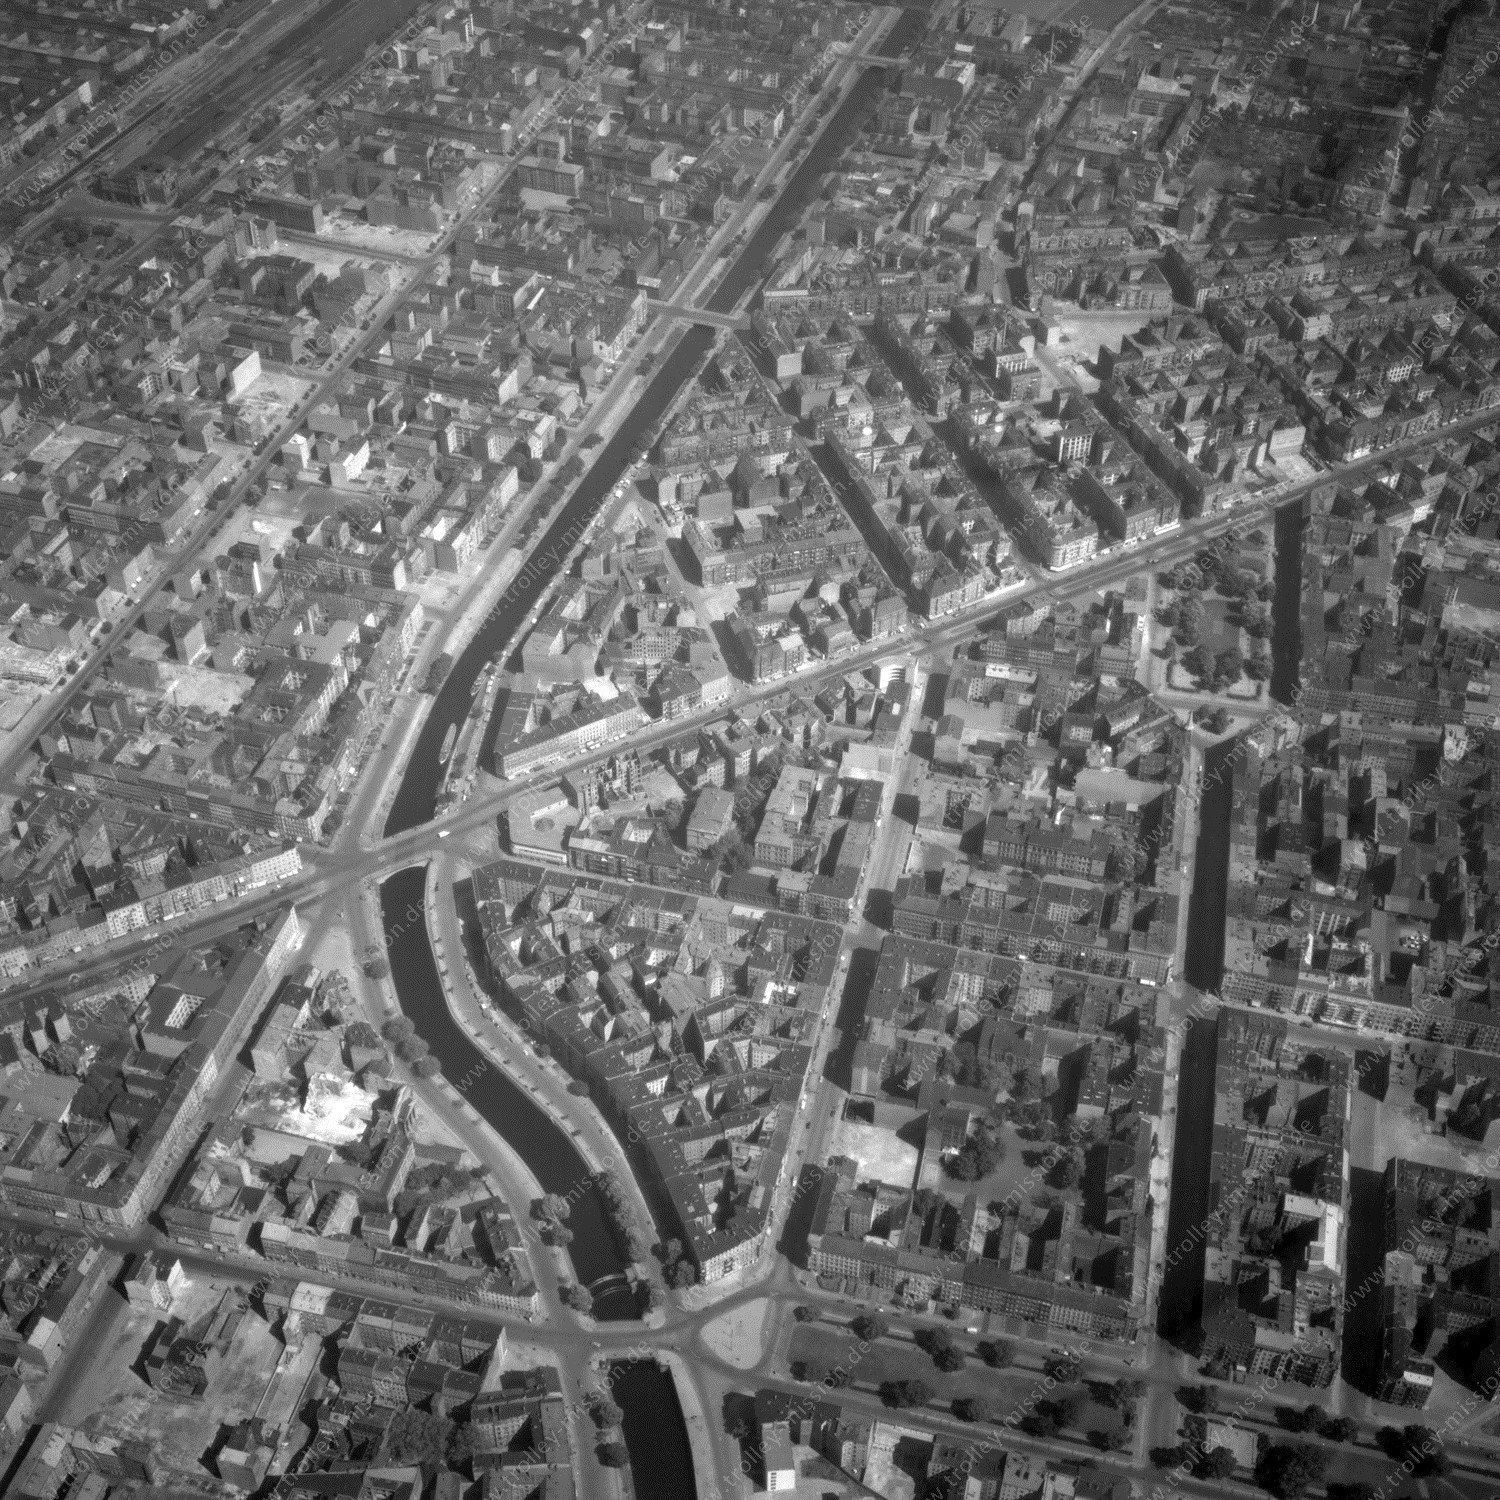 Alte Fotos und Luftbilder von Berlin - Luftbildaufnahme Nr. 04 - Historische Luftaufnahmen von West-Berlin aus dem Jahr 1954 - Flugstrecke Lima